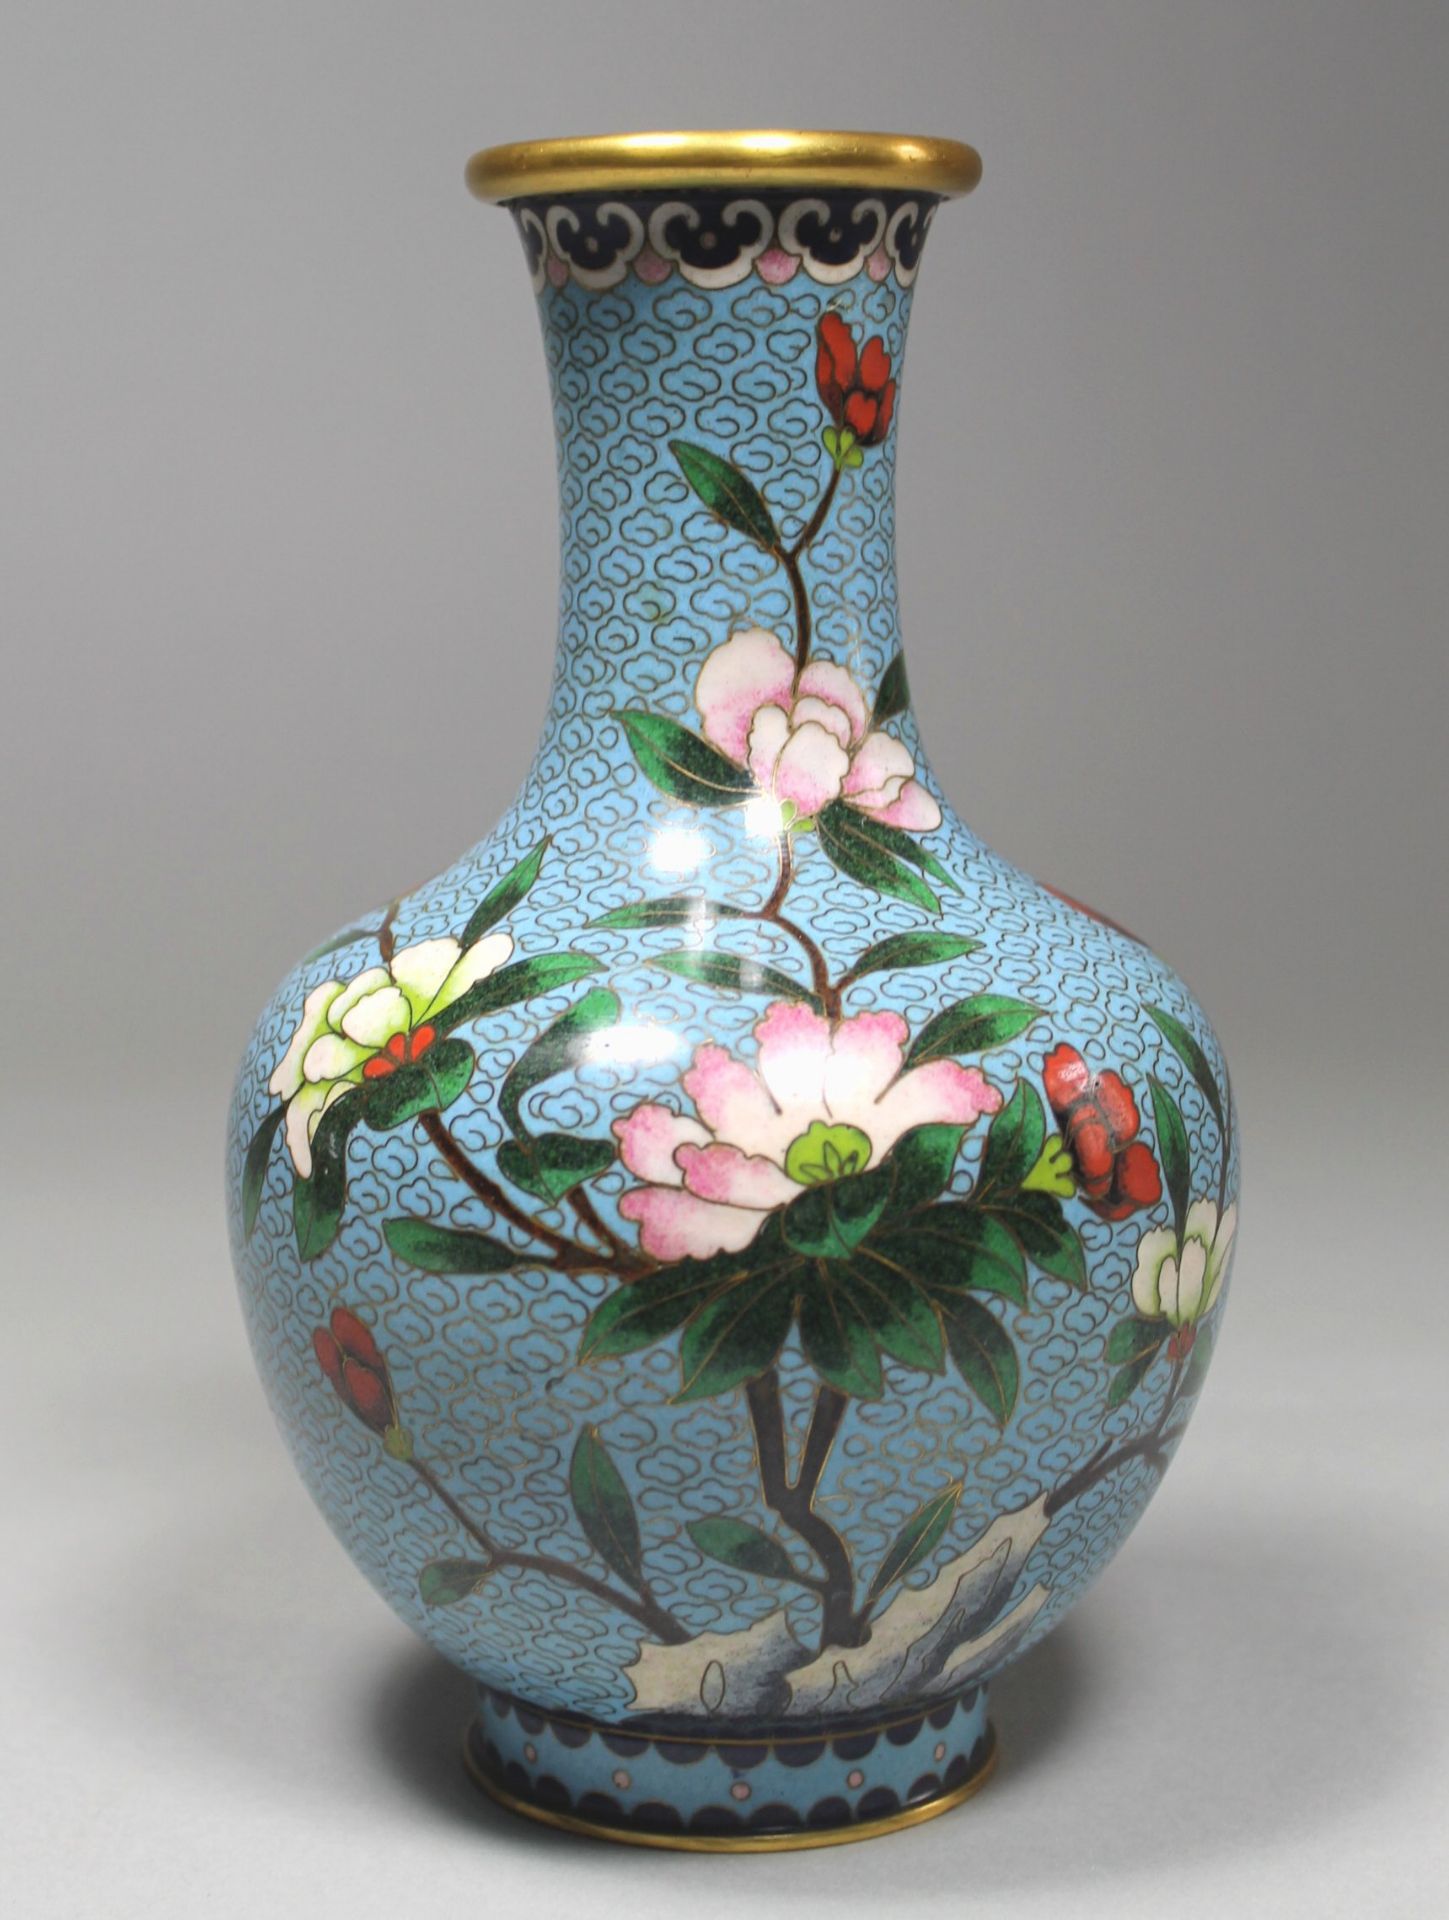 1 Cloisonné-Vase Messing/Emaille, polychromer floraler Dekor auf hellblauem Untergrund, eingezogener